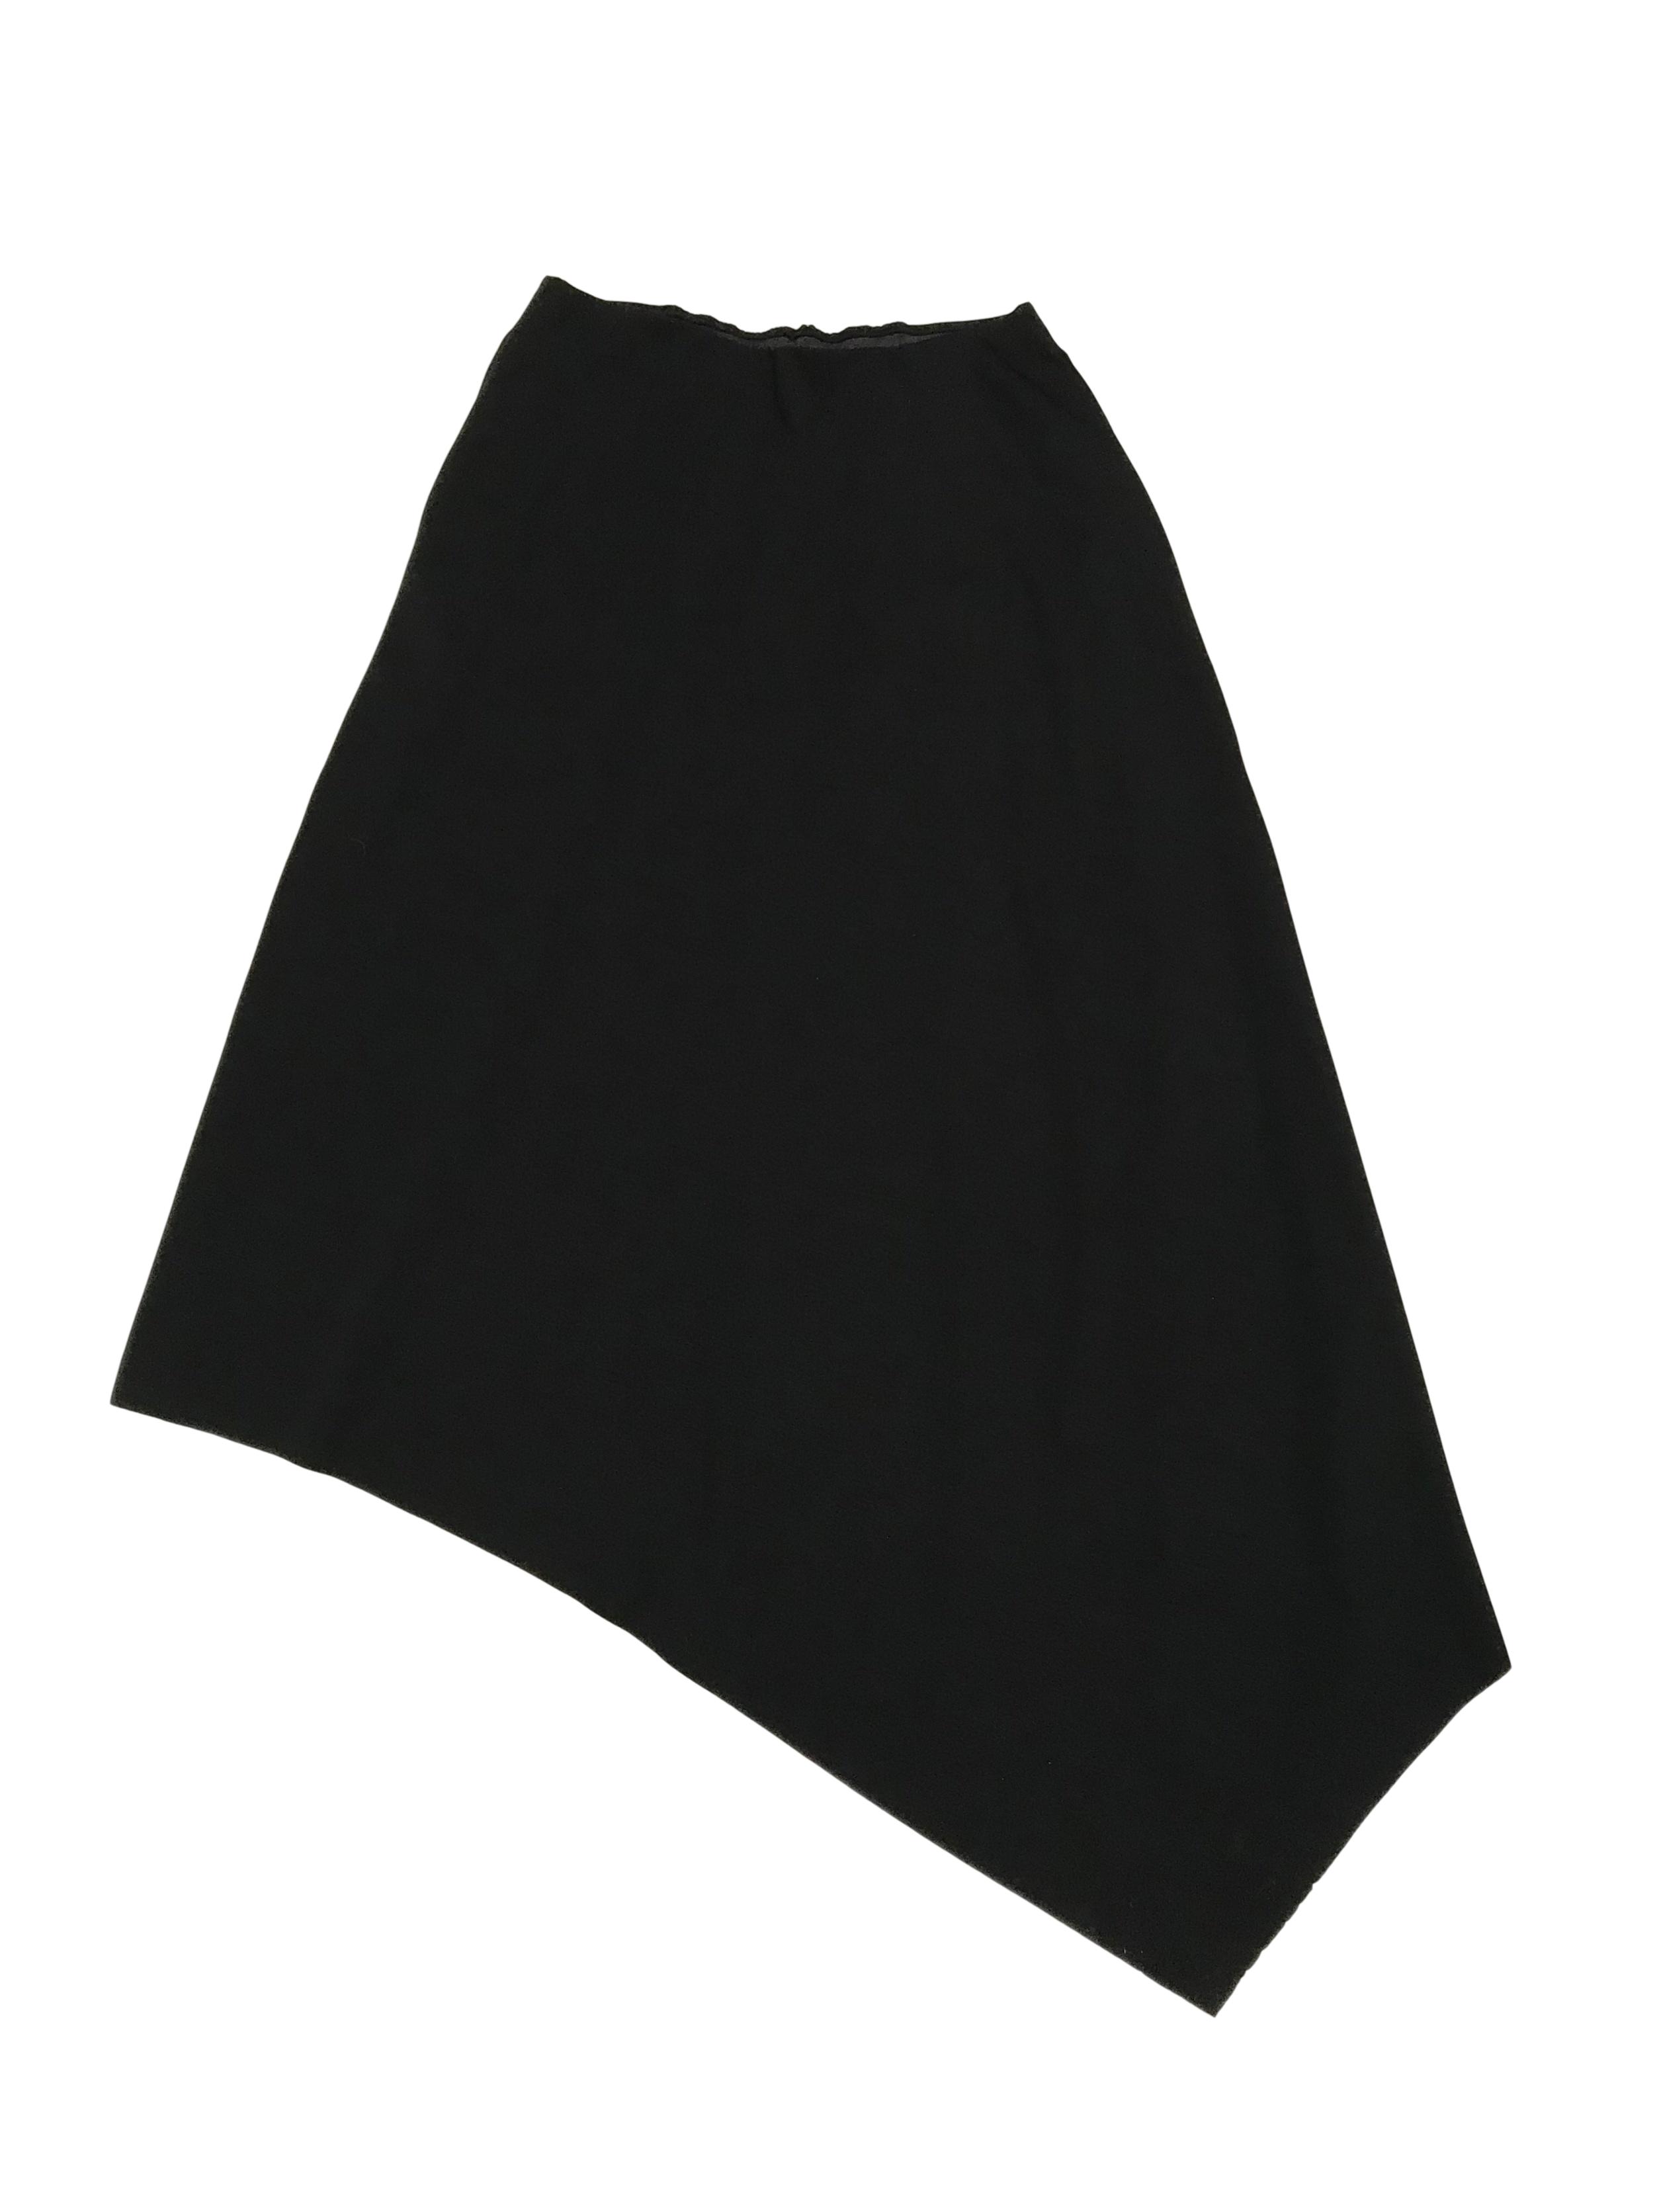 Falda COS larga asimétrica con elástico en la cintura (72cm sin estirar). Precio original S/ 350